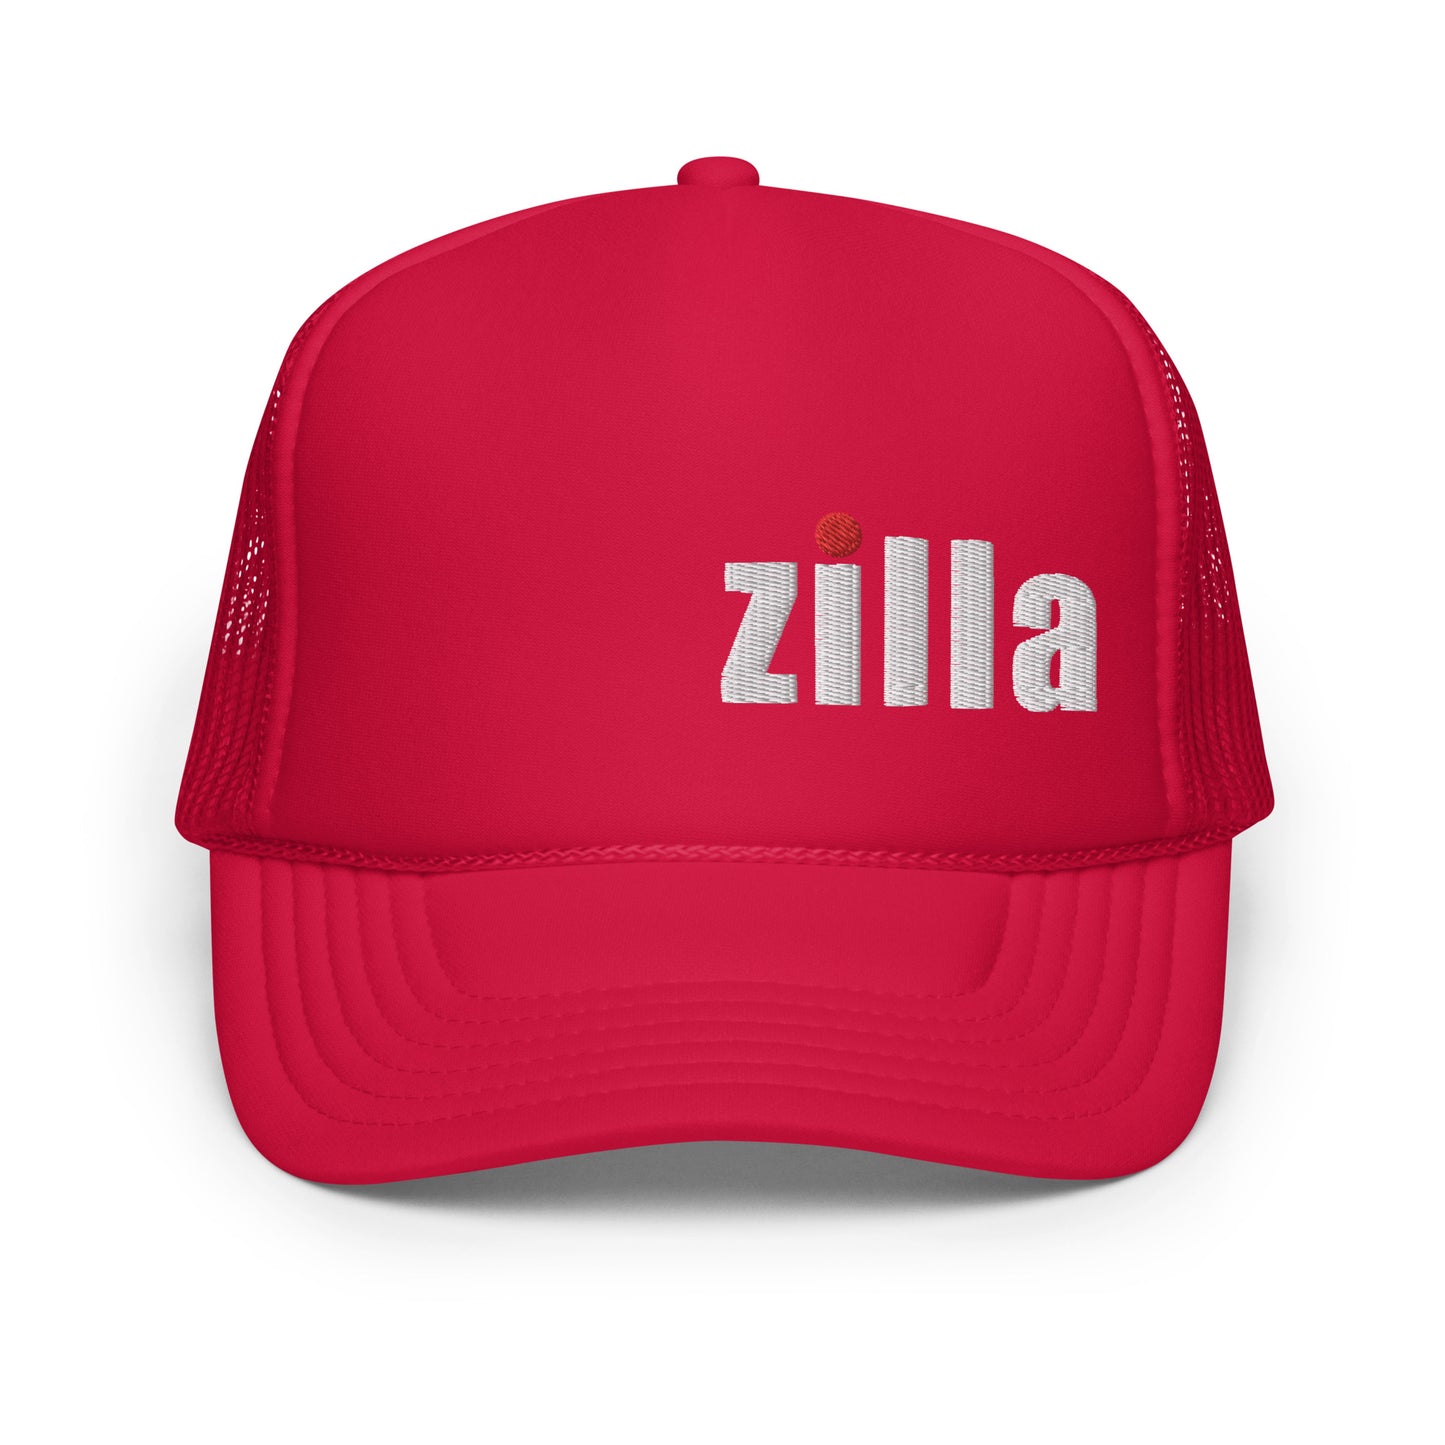 JDM Zilla Foam trucker hat